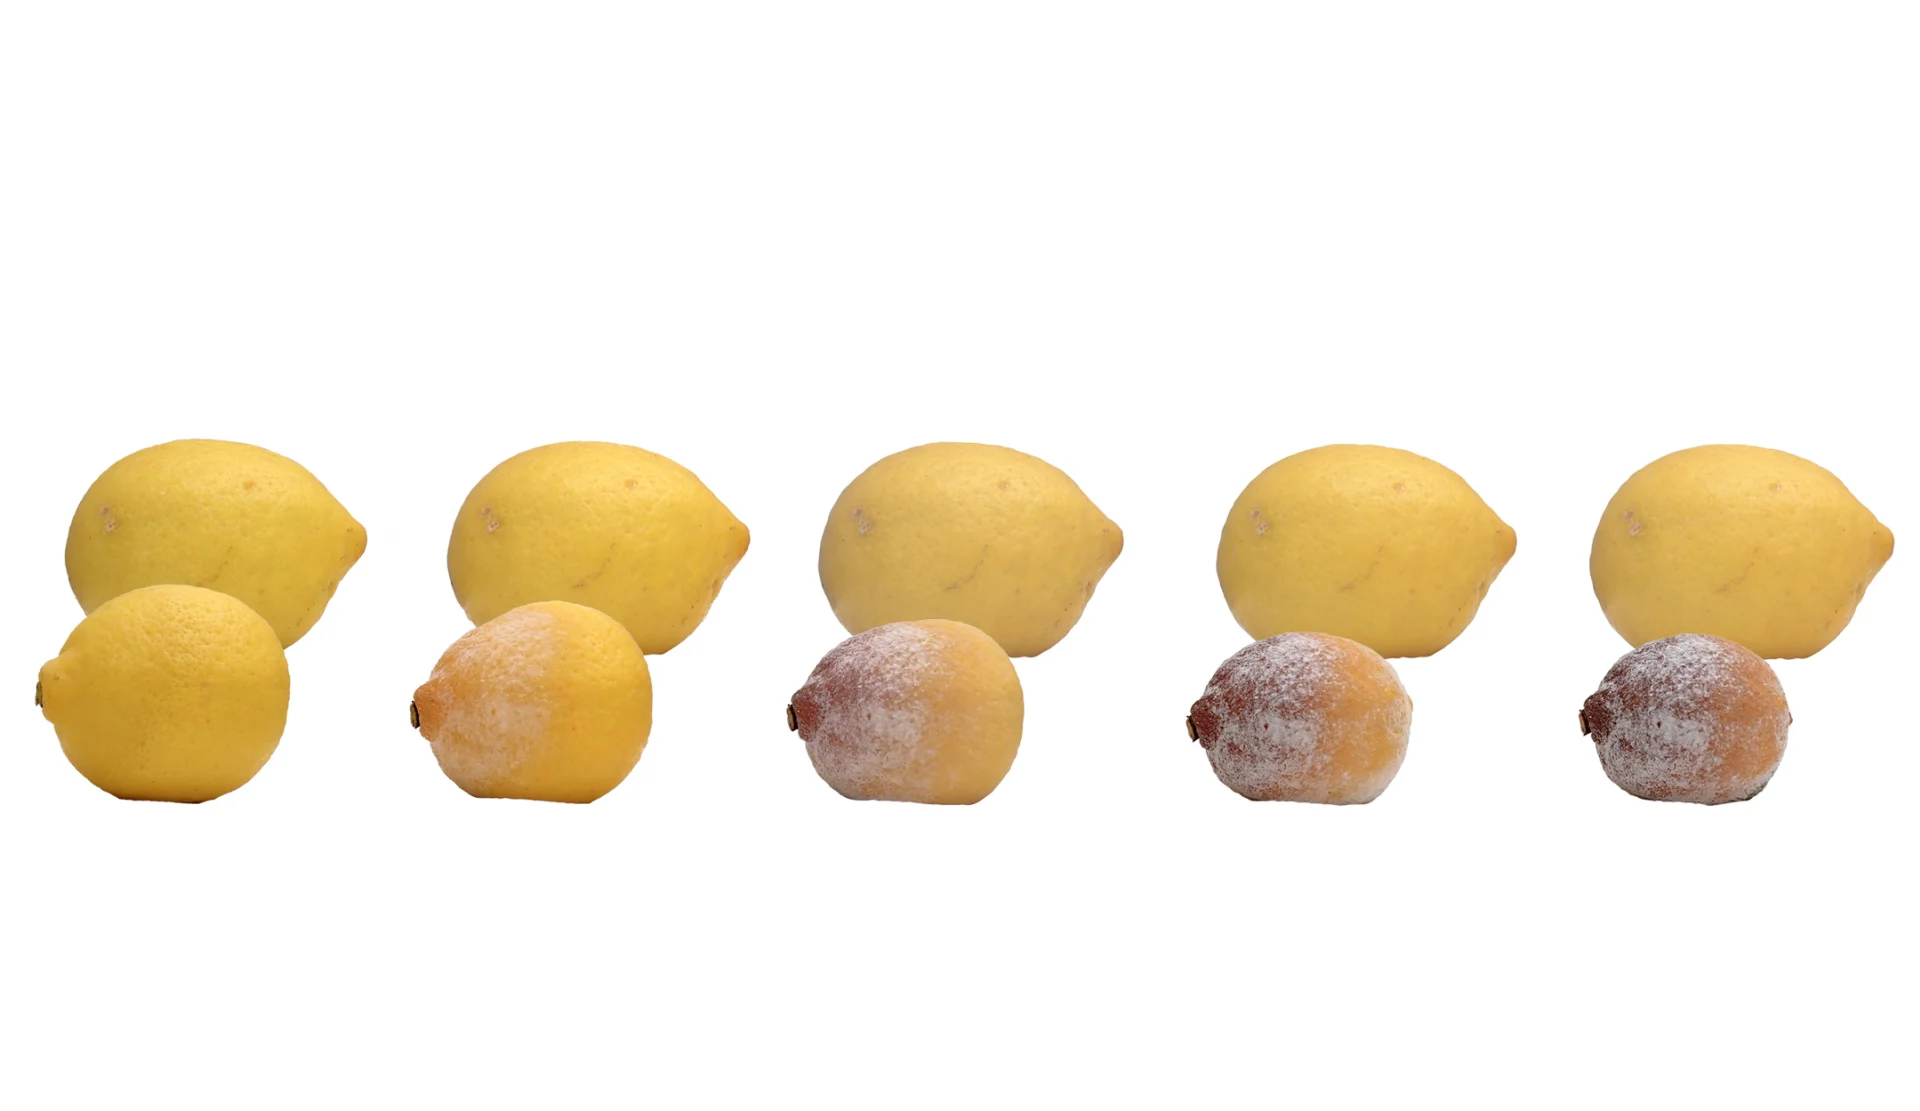 Verschiedene Stadien von schimmligen Zitronen